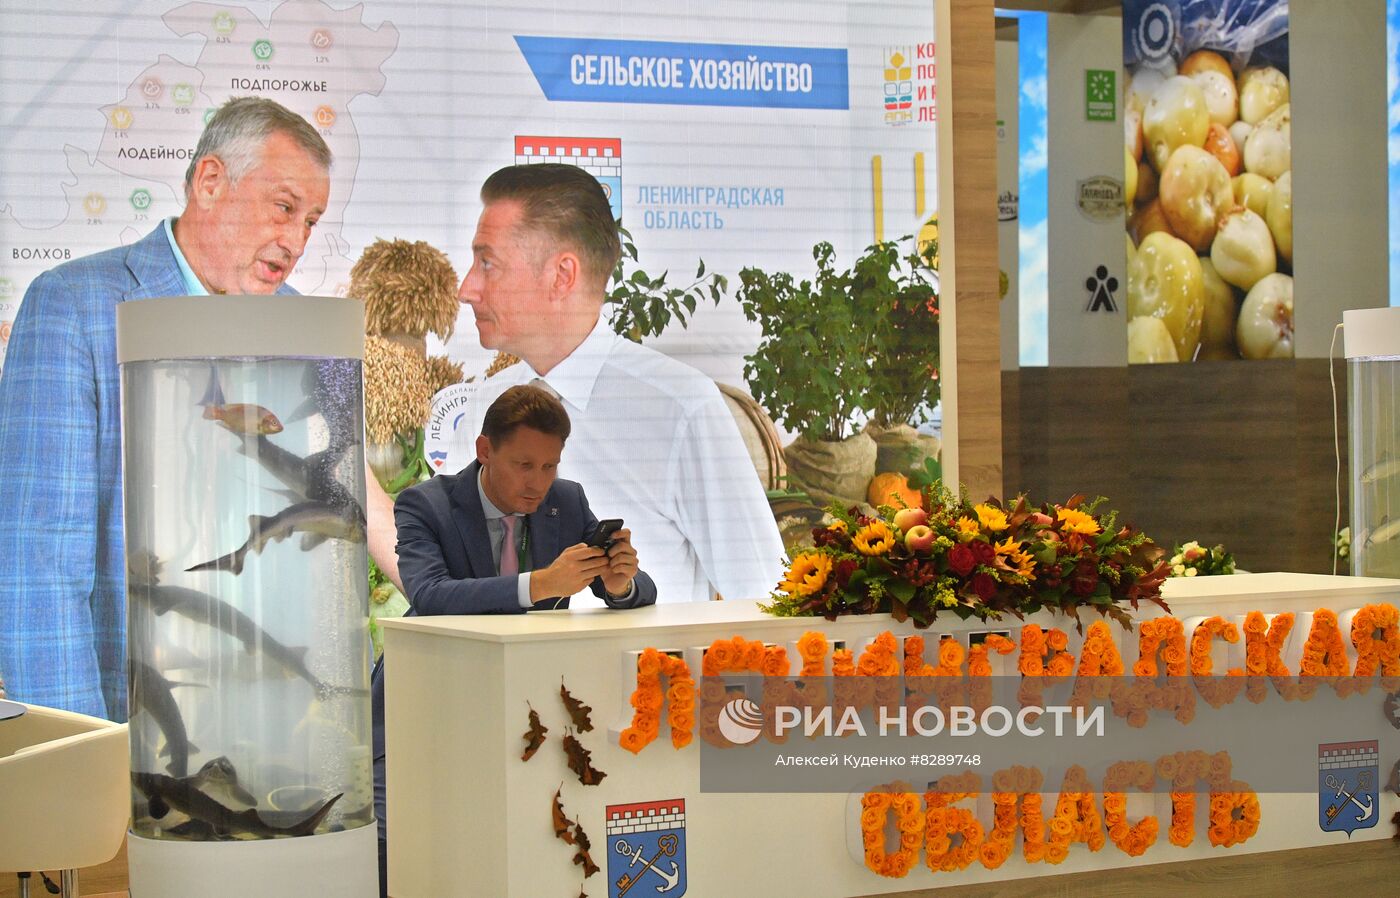 XXIV Всероссийская агропромышленная выставка "Золотая осень" 2022